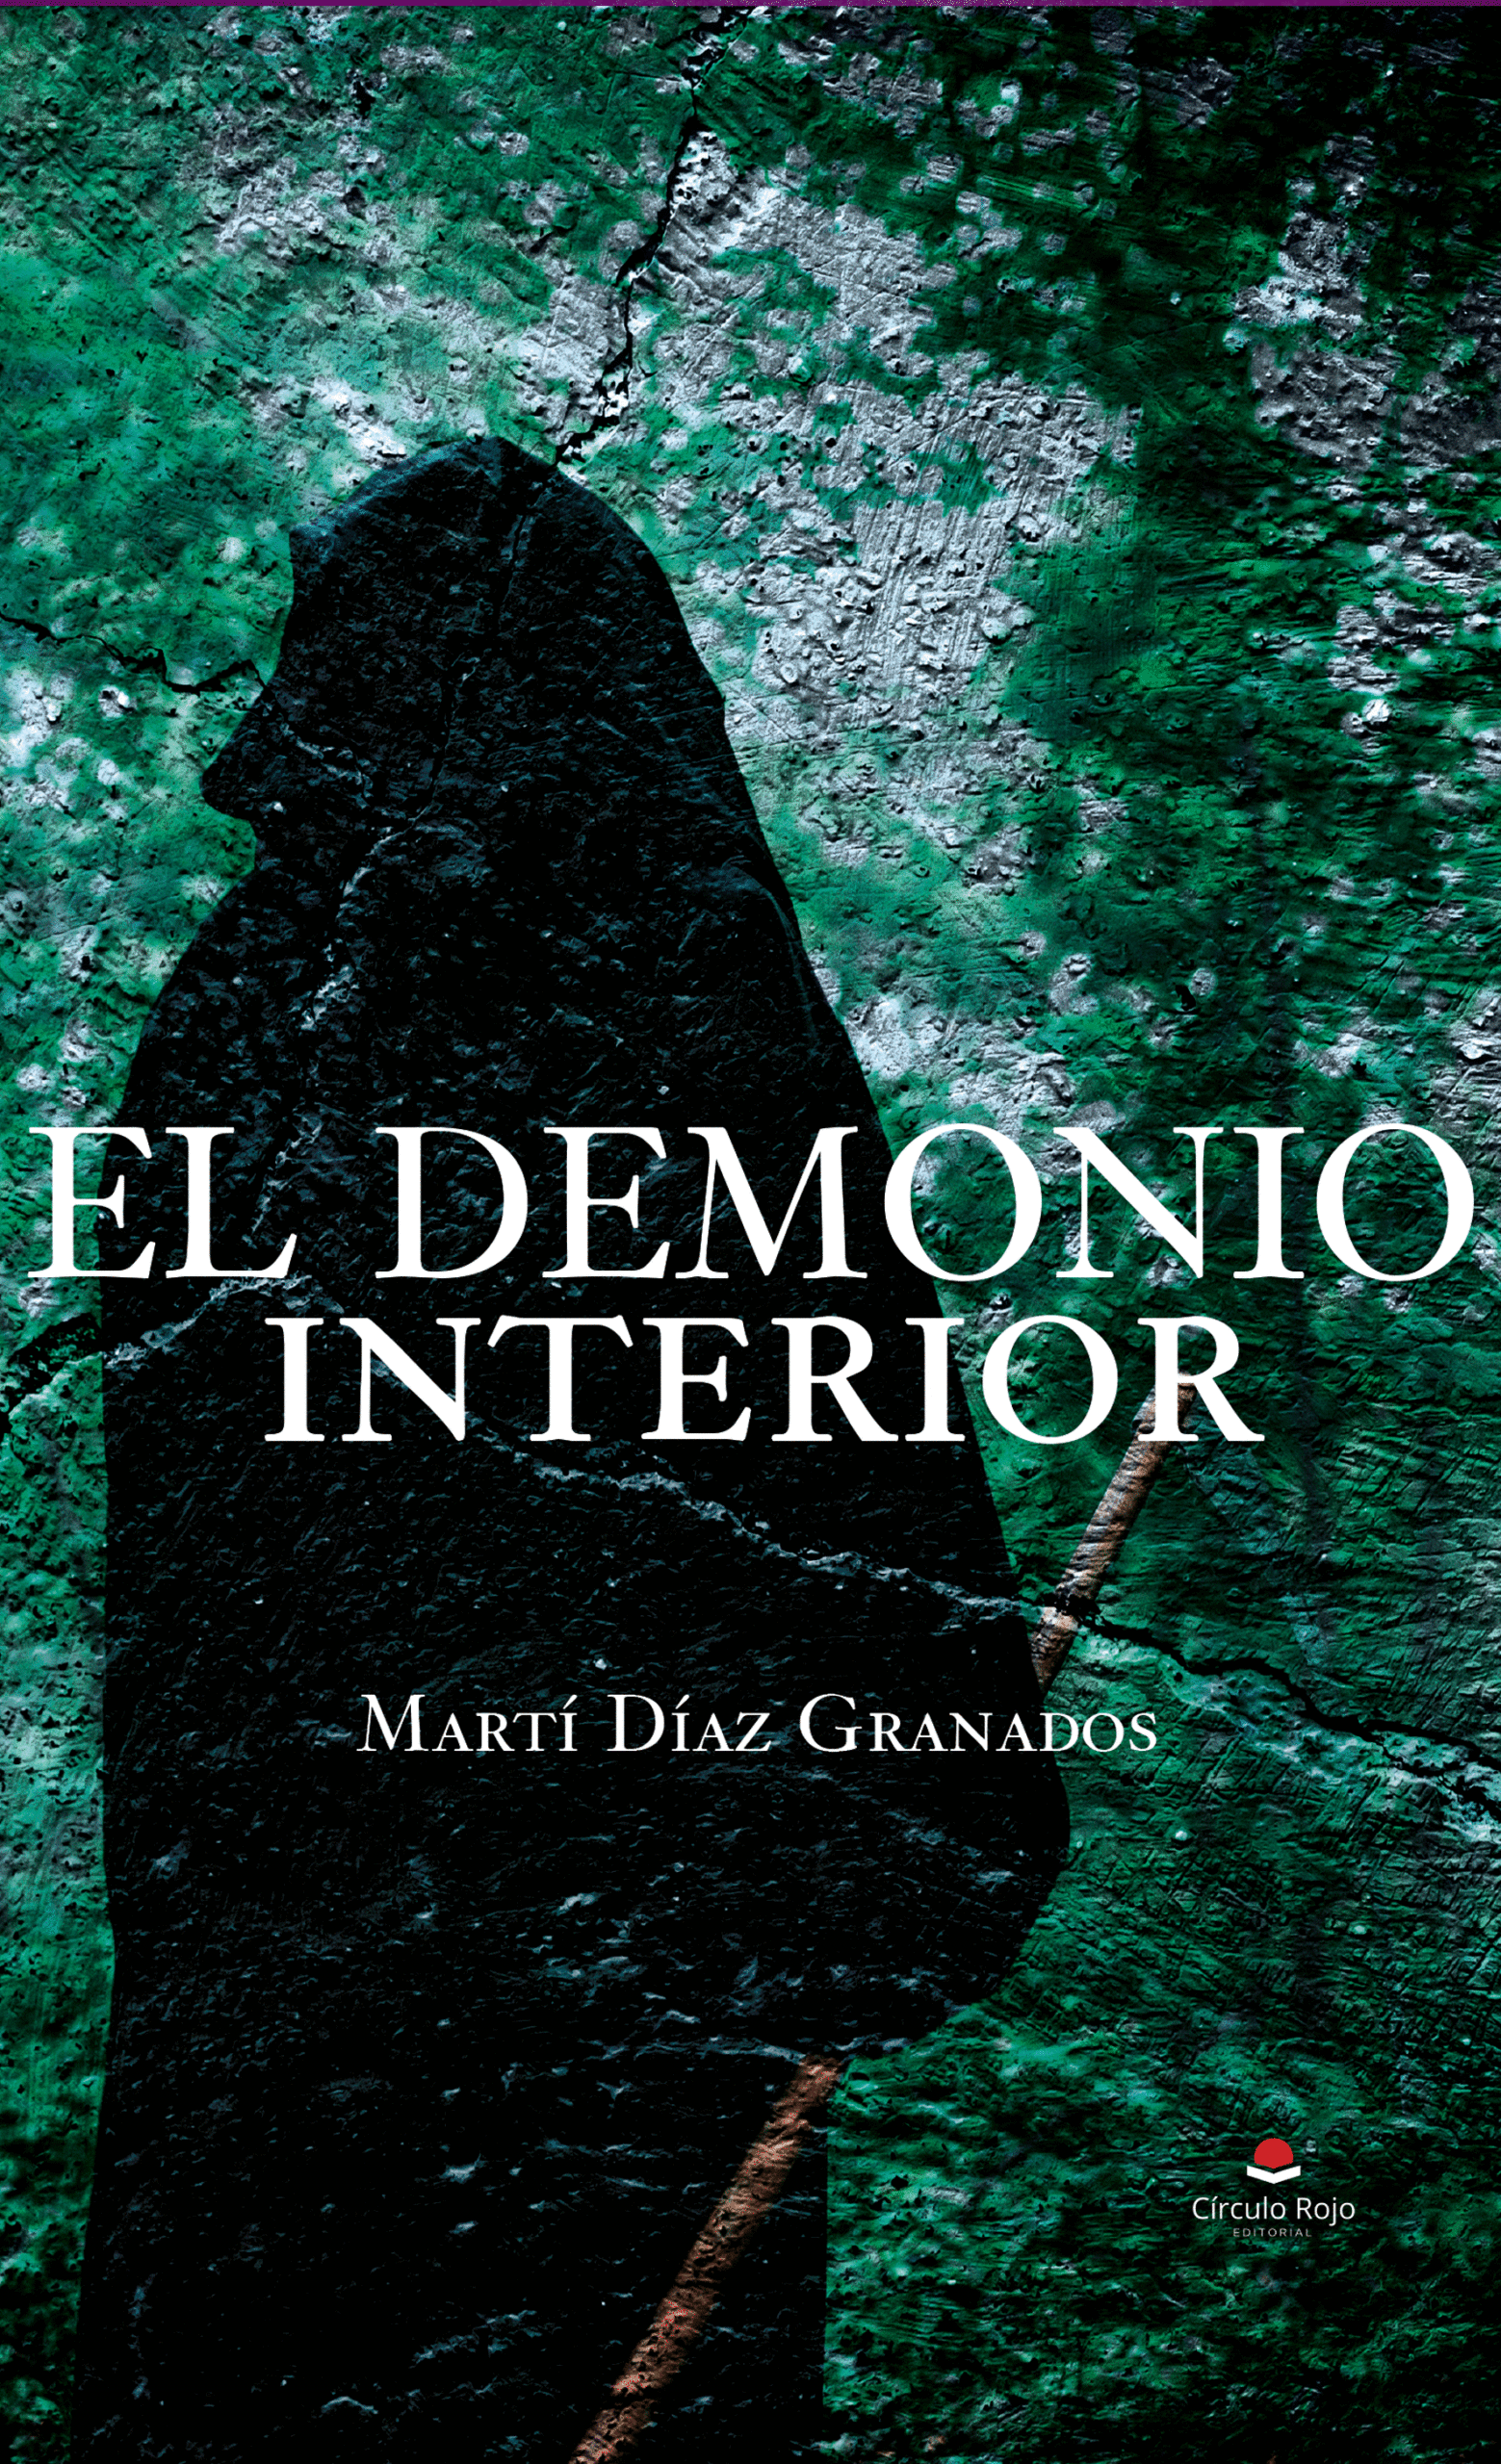 Charlamos con Martí Díaz Granados, que nos habla sobre la obra que ha publicado con Círculo Rojo “El demonio interior”.